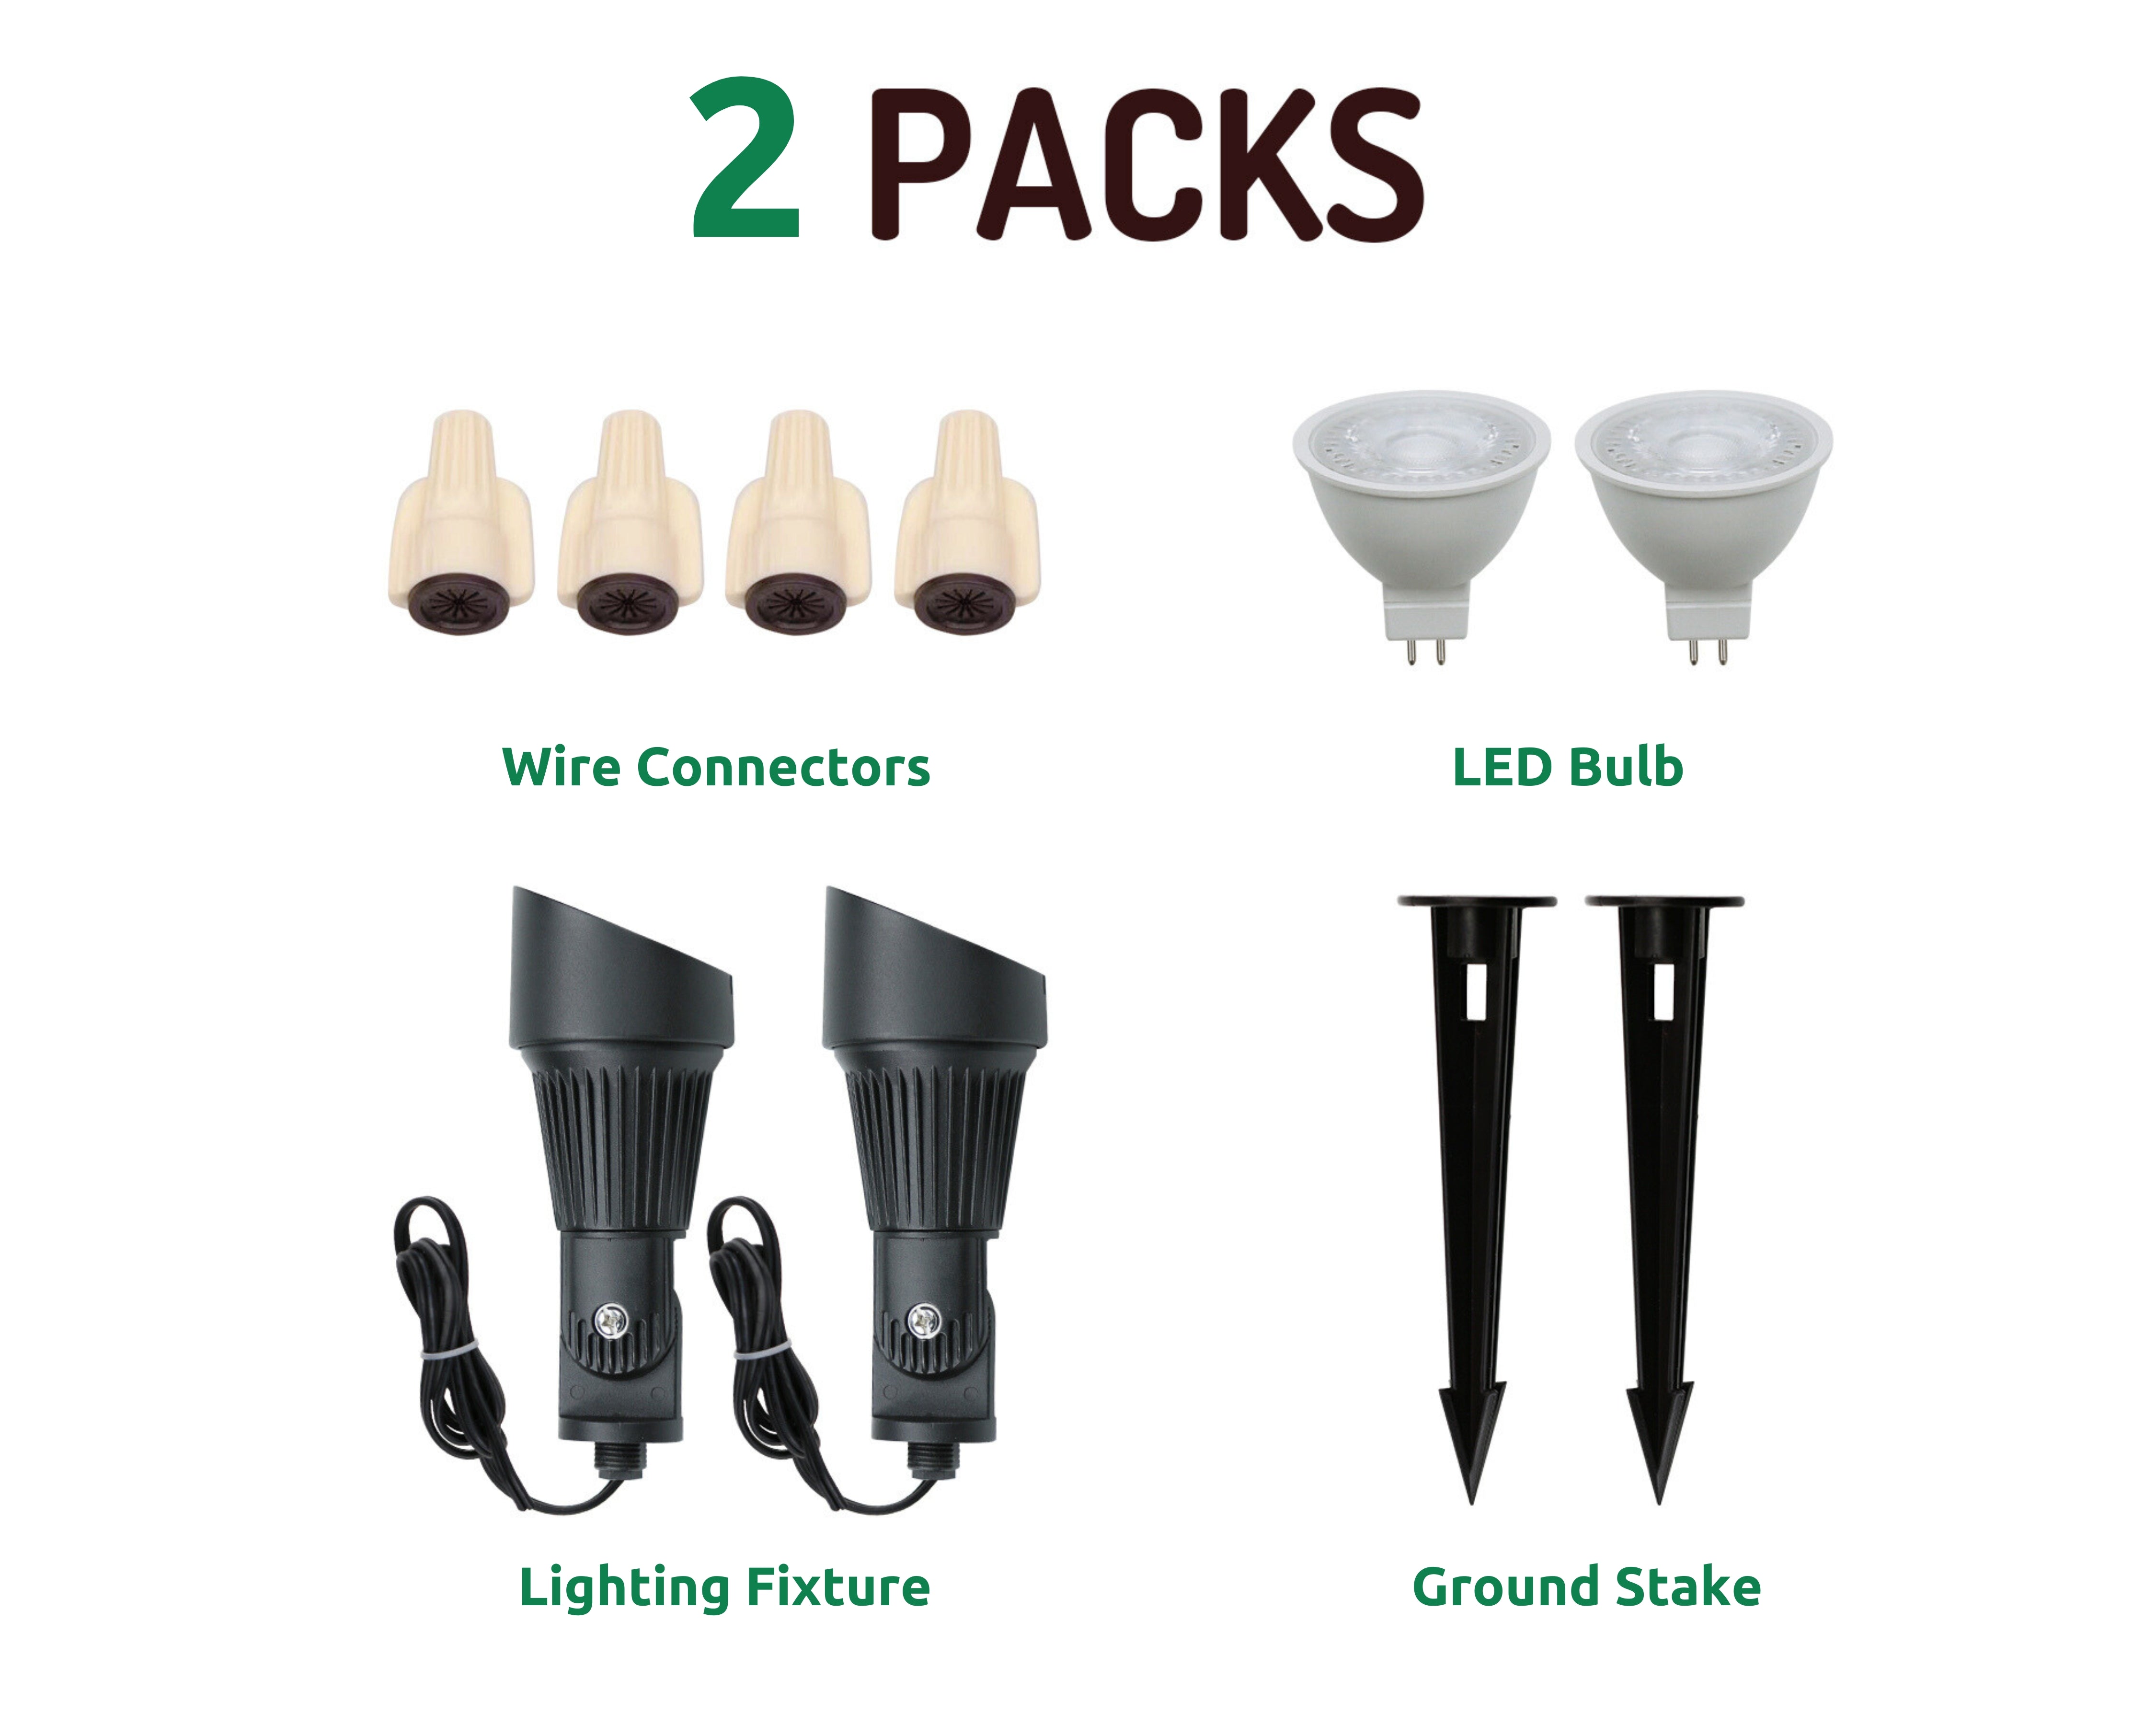 Lumina Lighting® 5W Landscape Spotlights | Low Voltage Landscape Lighting Lights - 12V 3000K | Replaceable MR16 LED Bulb (Black, 2-Pack)